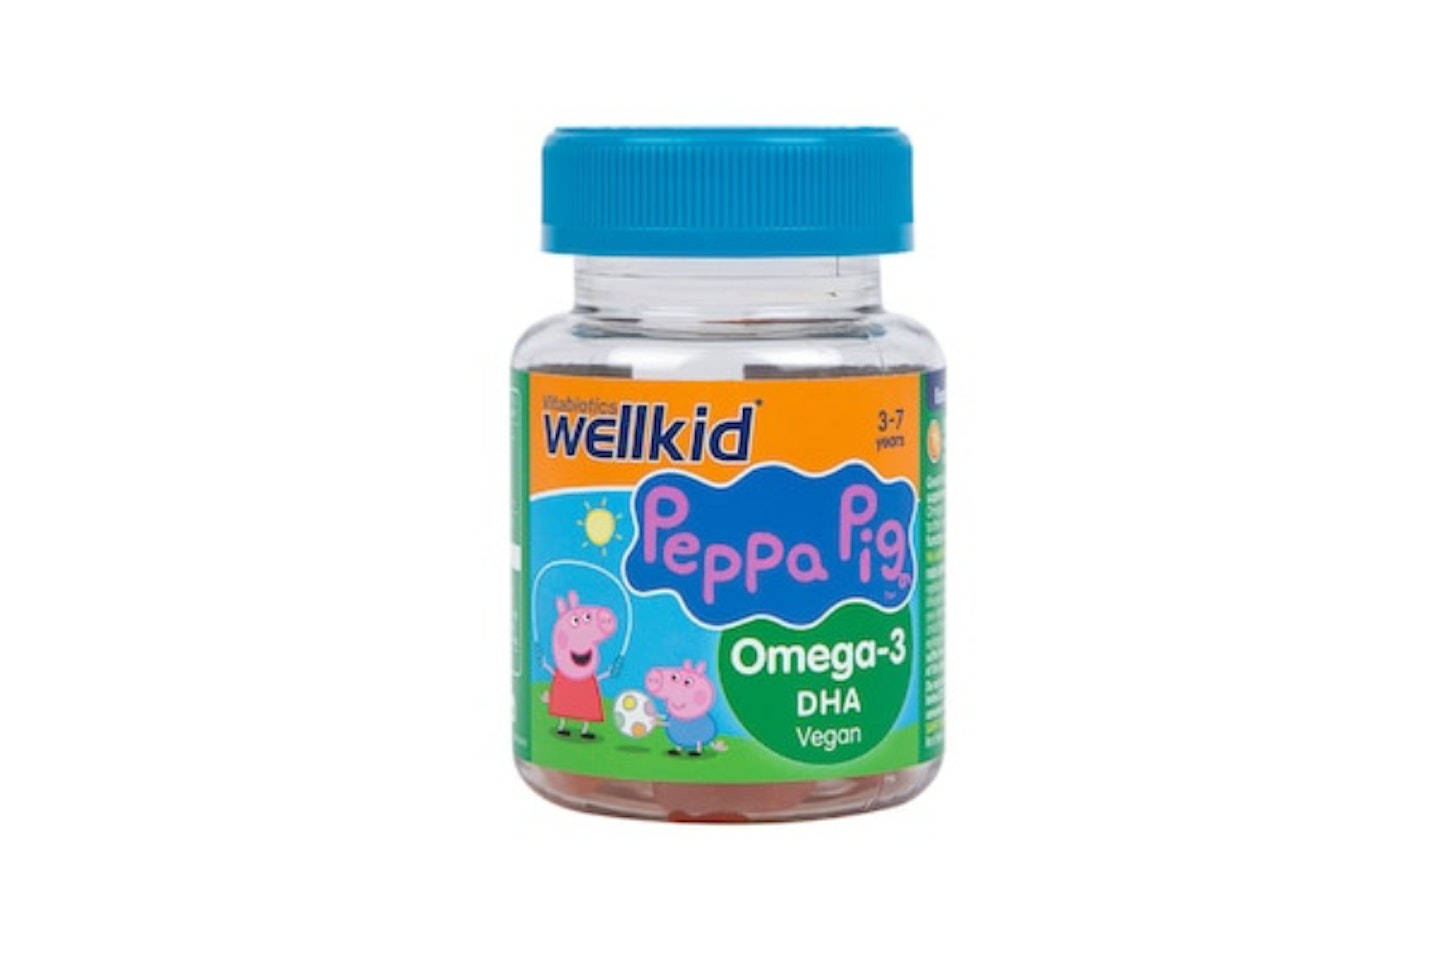 Wellkid Peppa Pig Omega 3